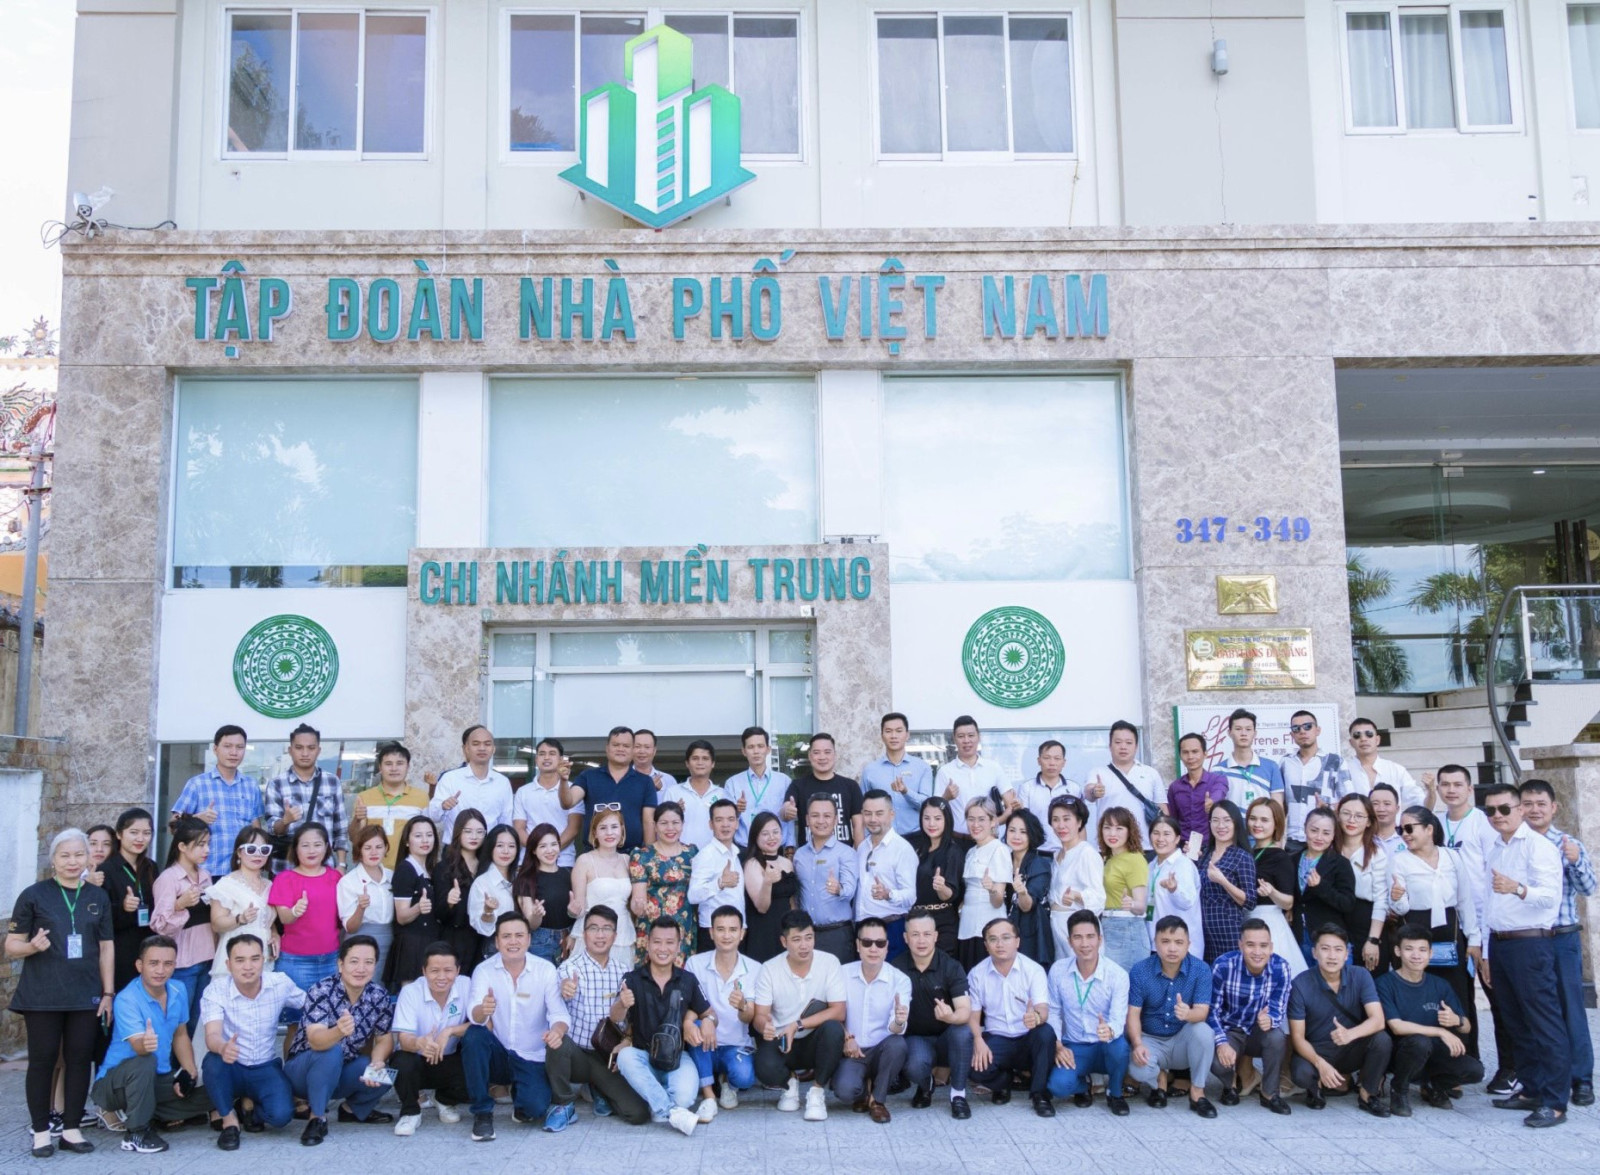 Tập đoàn Nhà phố Việt Nam khai trương chi nhánh Miền Trung tại Đà Nẵng